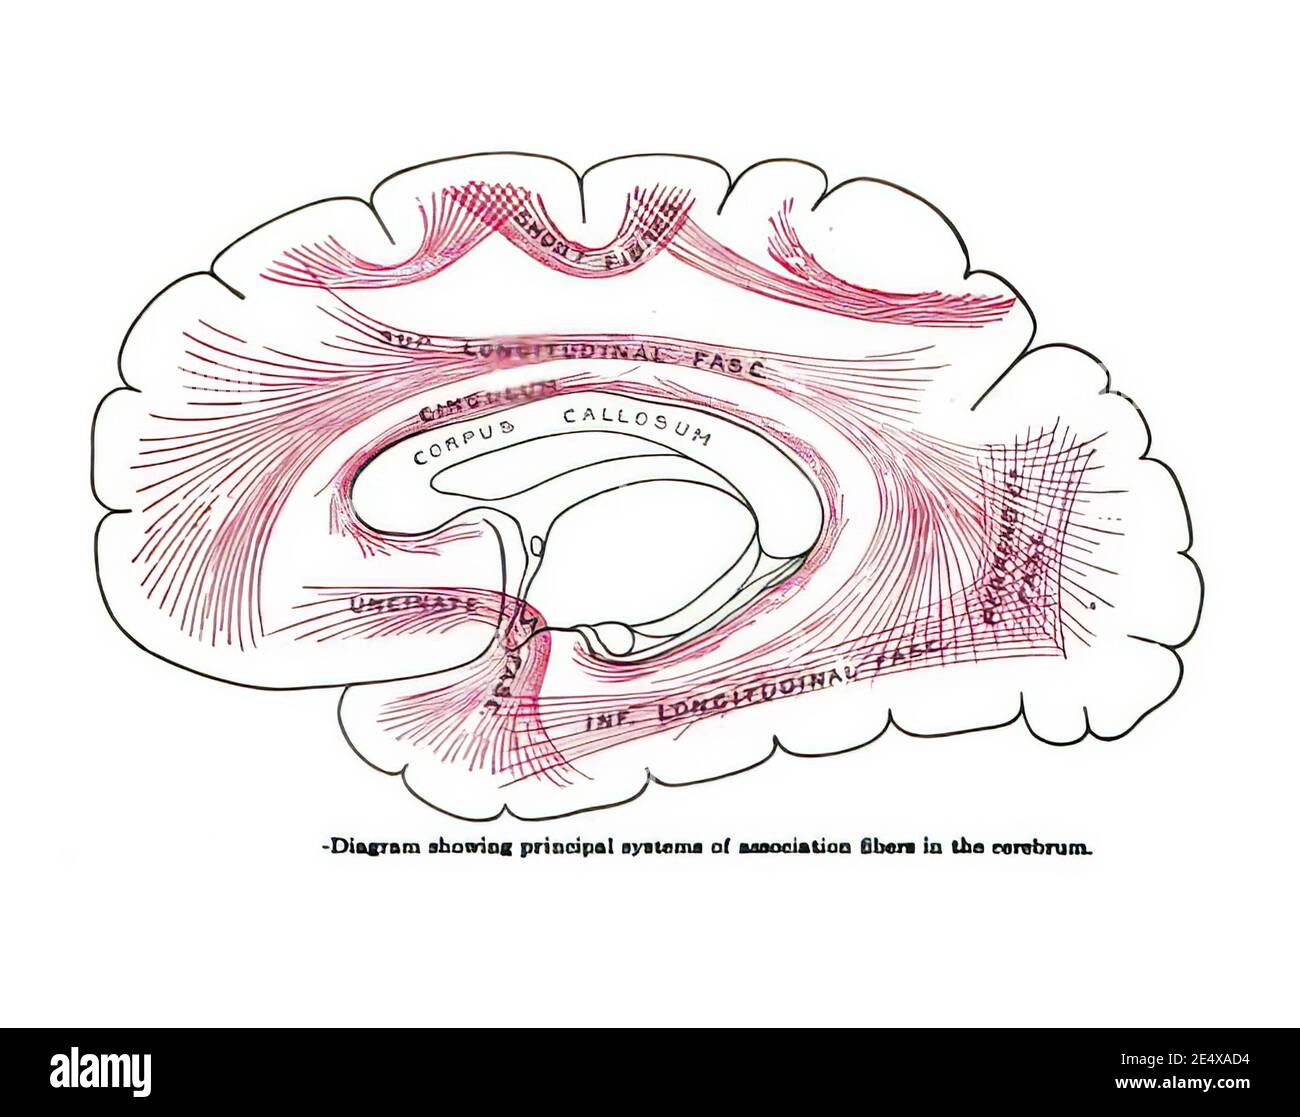 Diagrama de un libro del siglo XIX que muestra los principales sistemas de asociación fibras en el cerebro Foto de stock